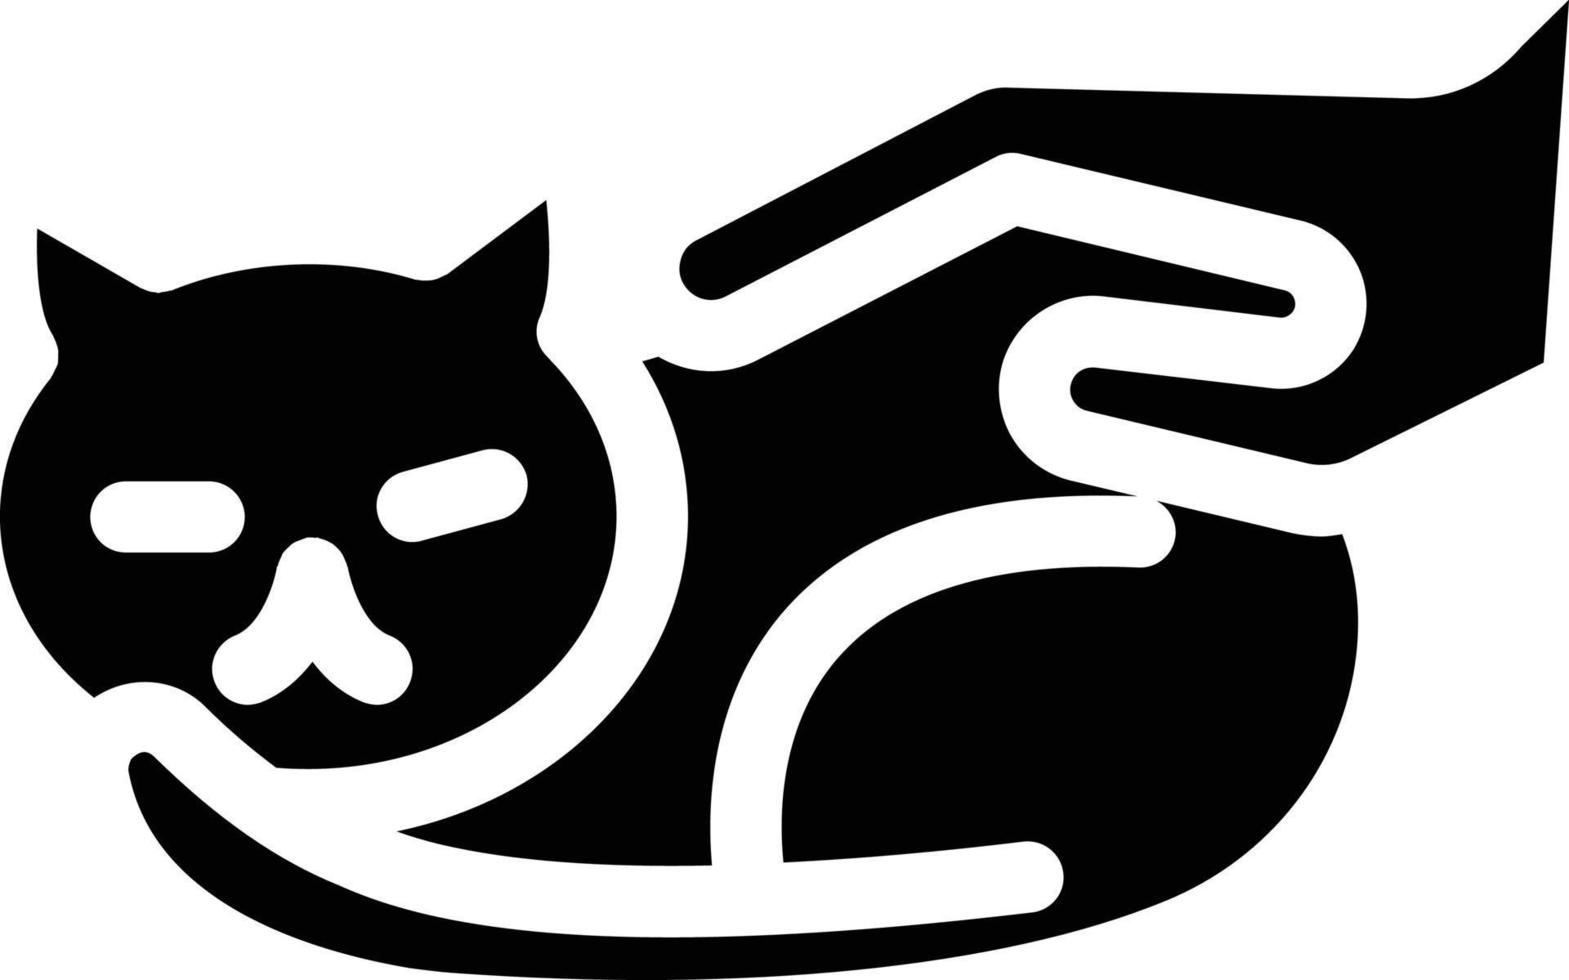 katt terapi vektor illustration på en bakgrund.premium kvalitet symbols.vector ikoner för begrepp och grafisk design.